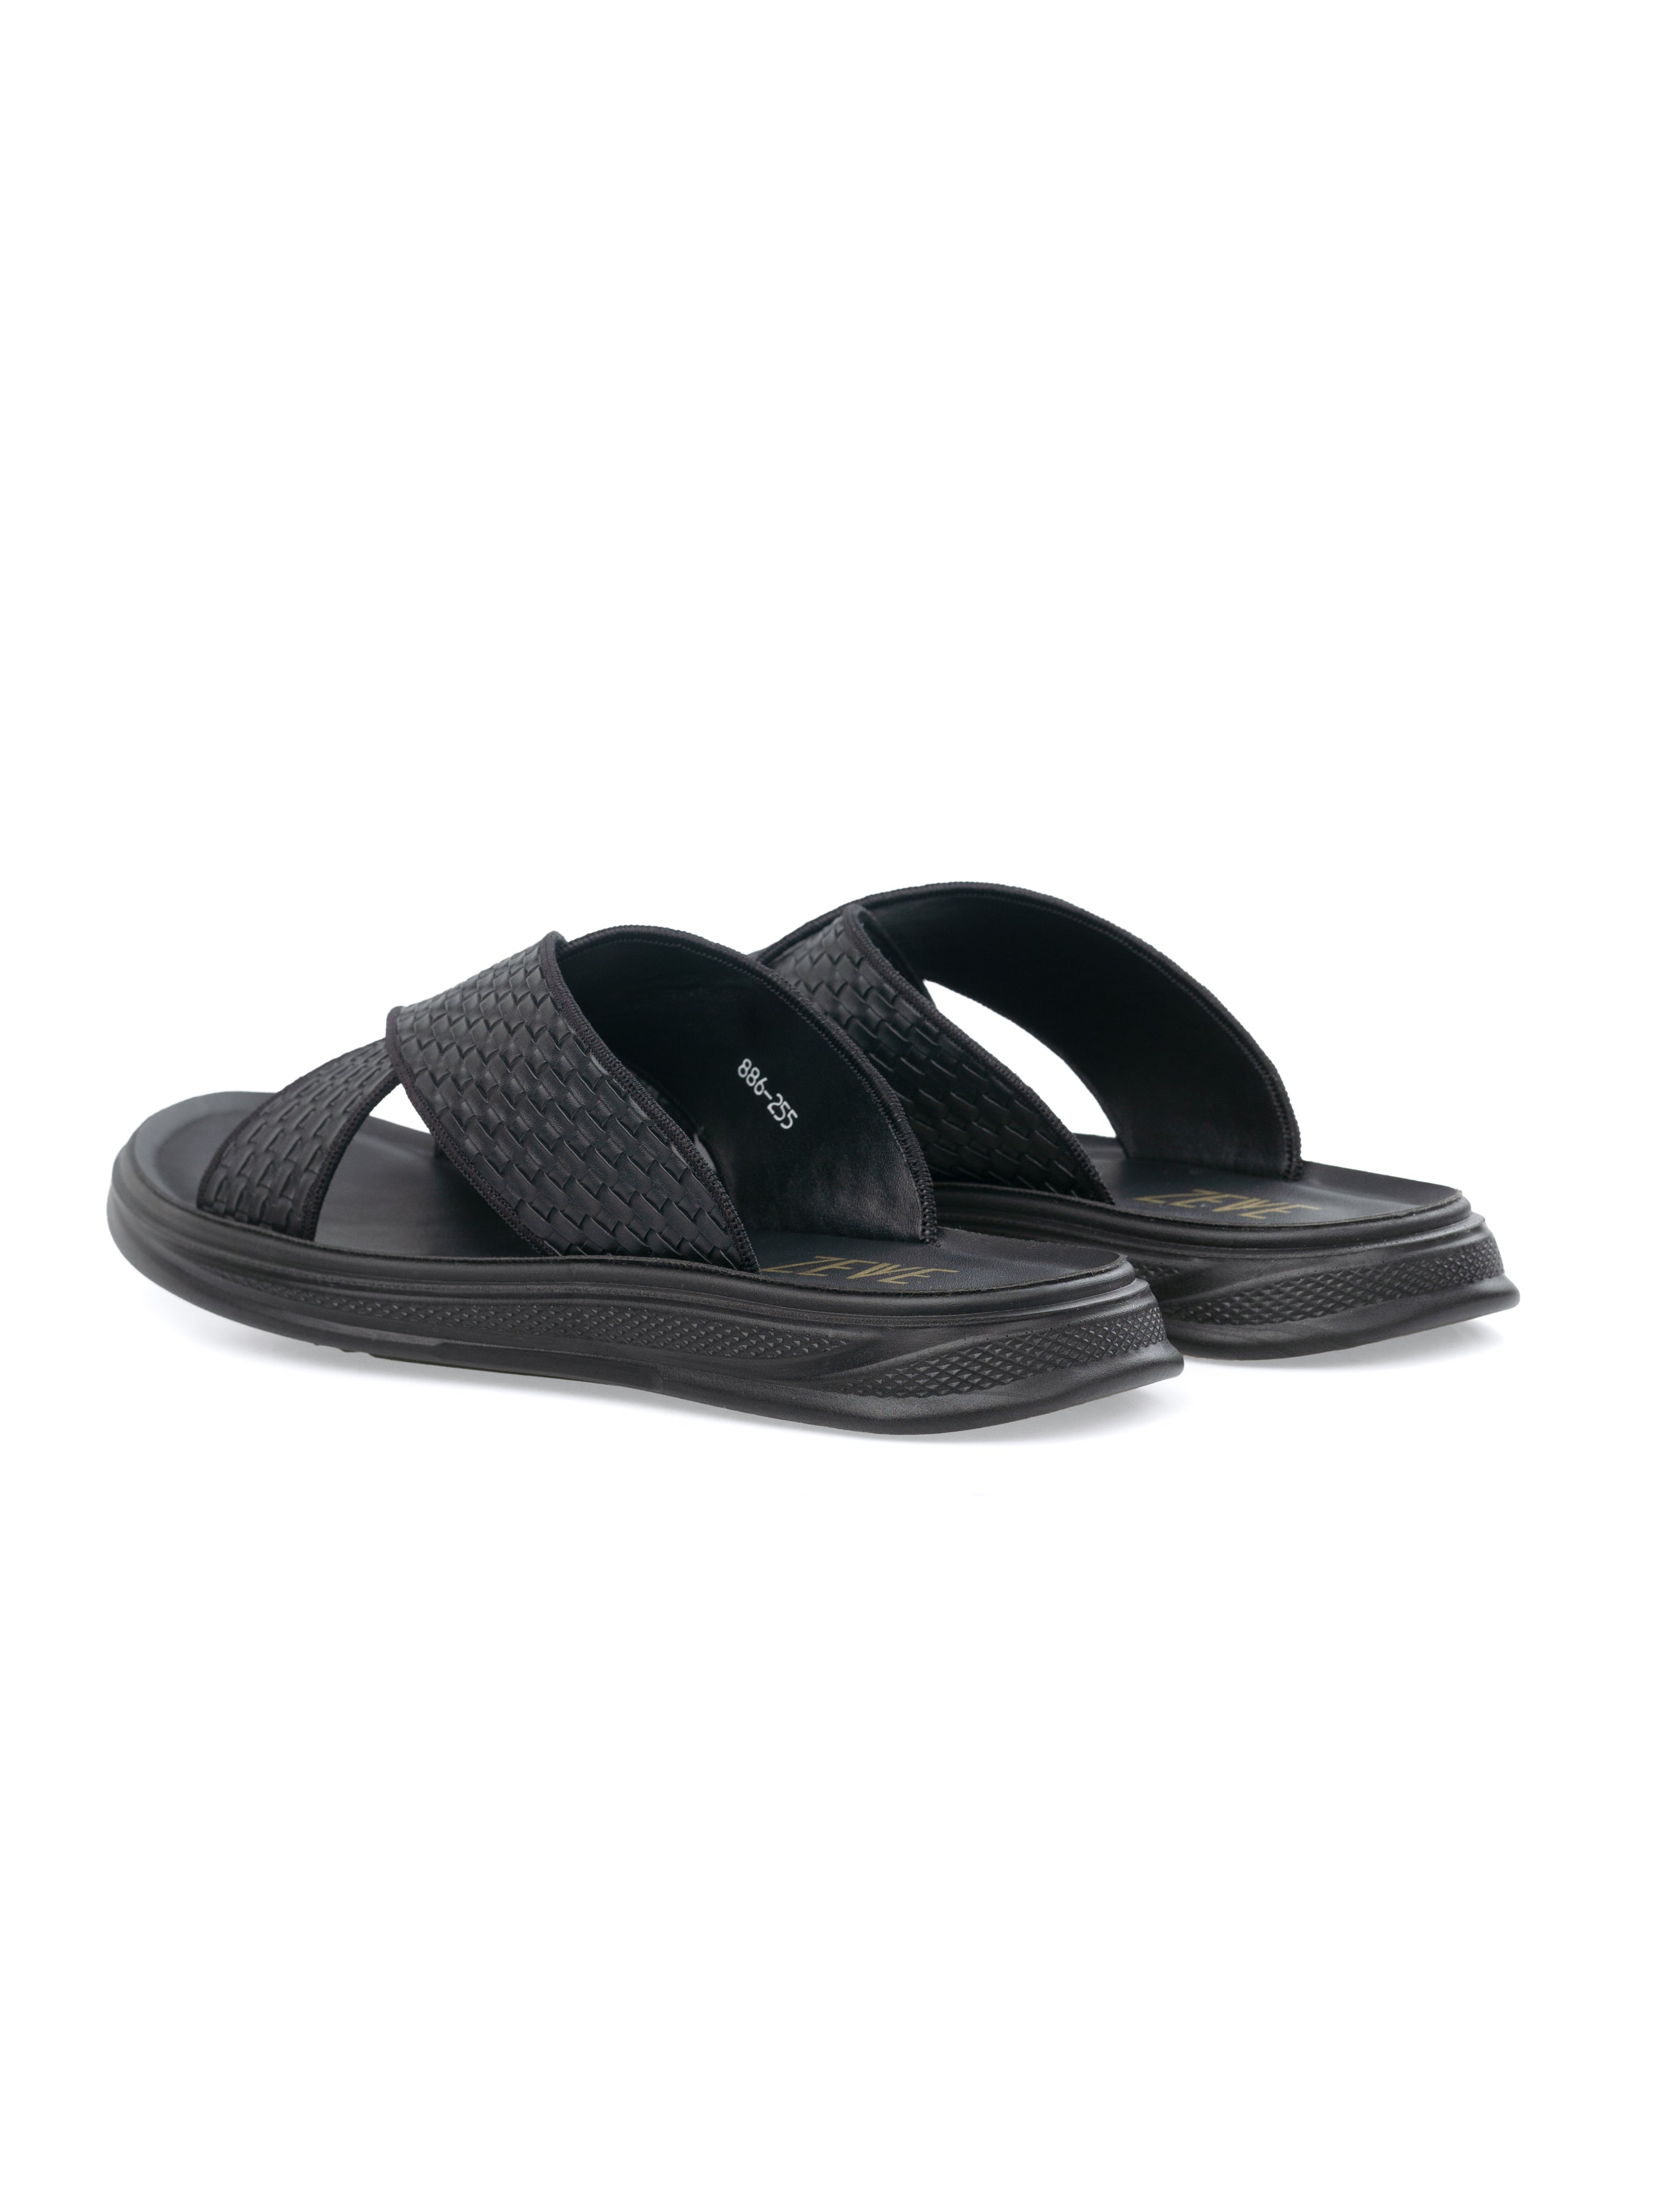 Cross Strap Sandal - Black Woven (Cloud Sole) | Zeve Shoes